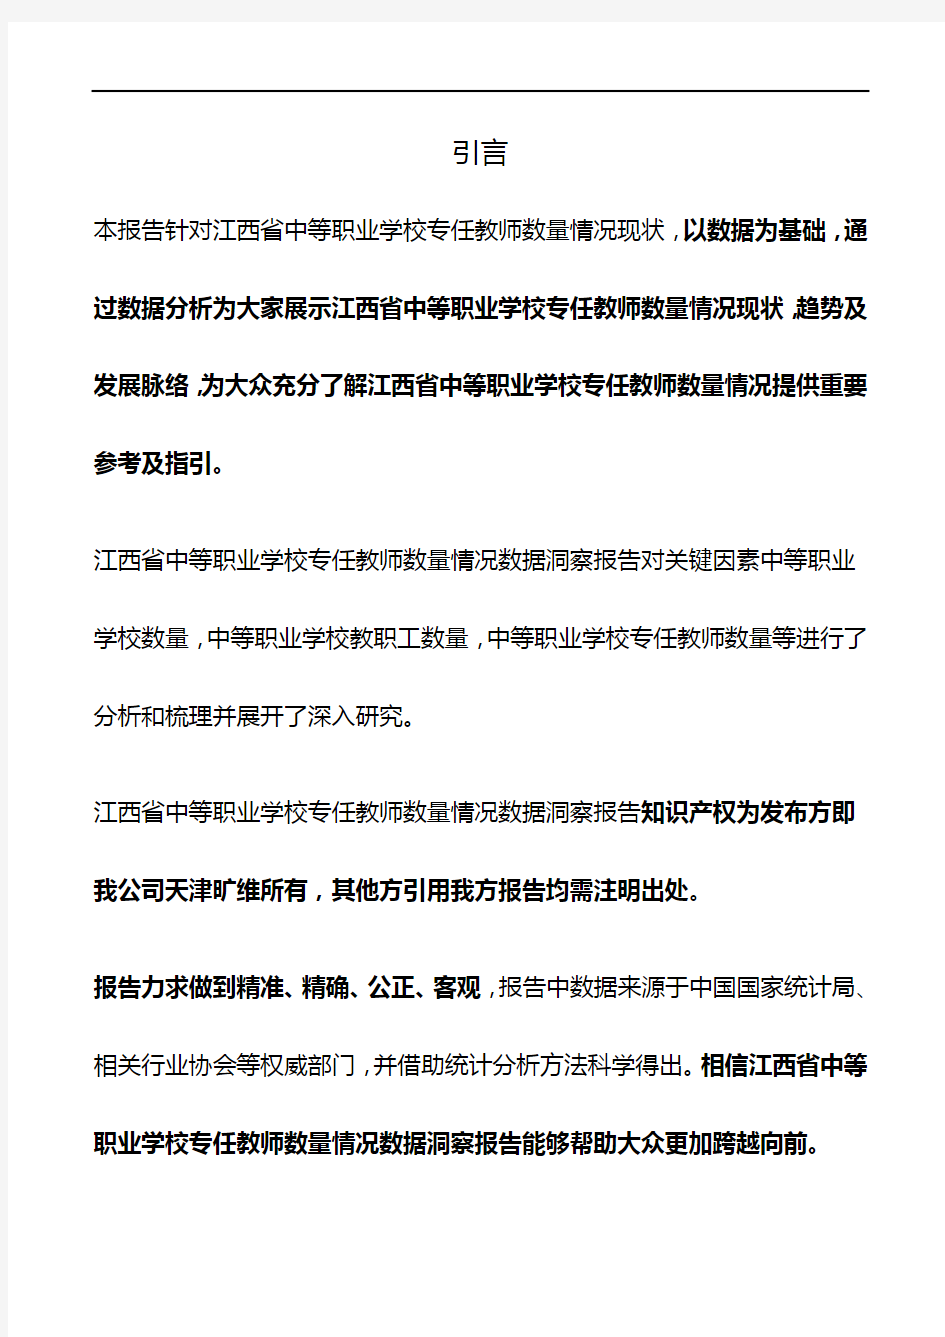 江西省中等职业学校专任教师数量情况3年数据洞察报告2019版